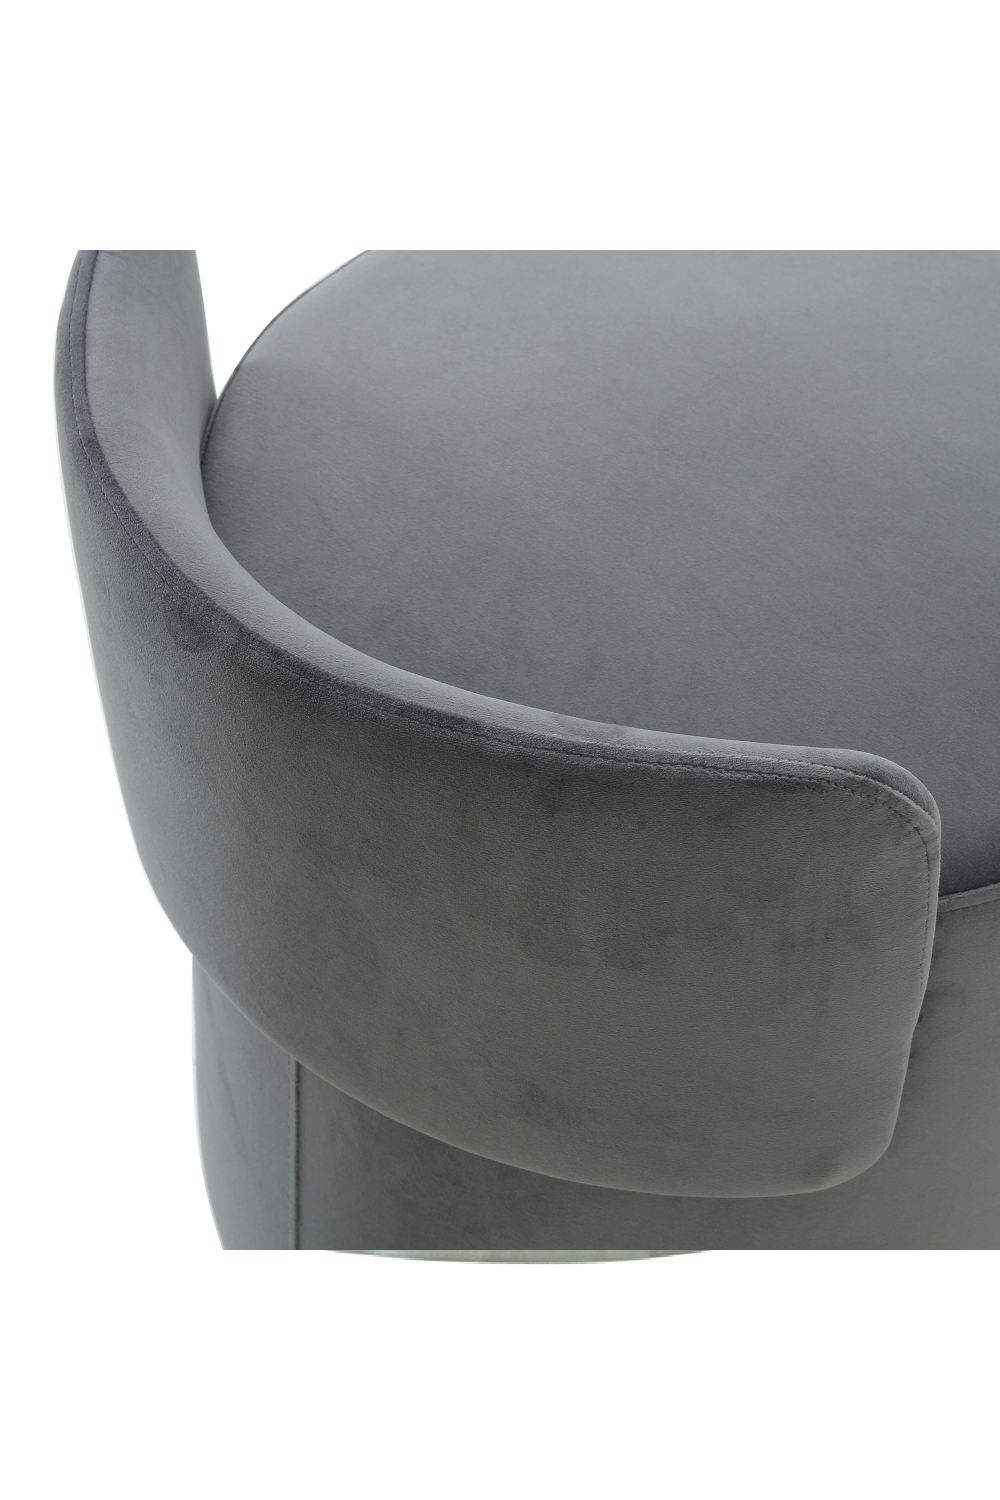 Round Gray Velvet Upholstered Stool | Andrew Martin Otis | OROA